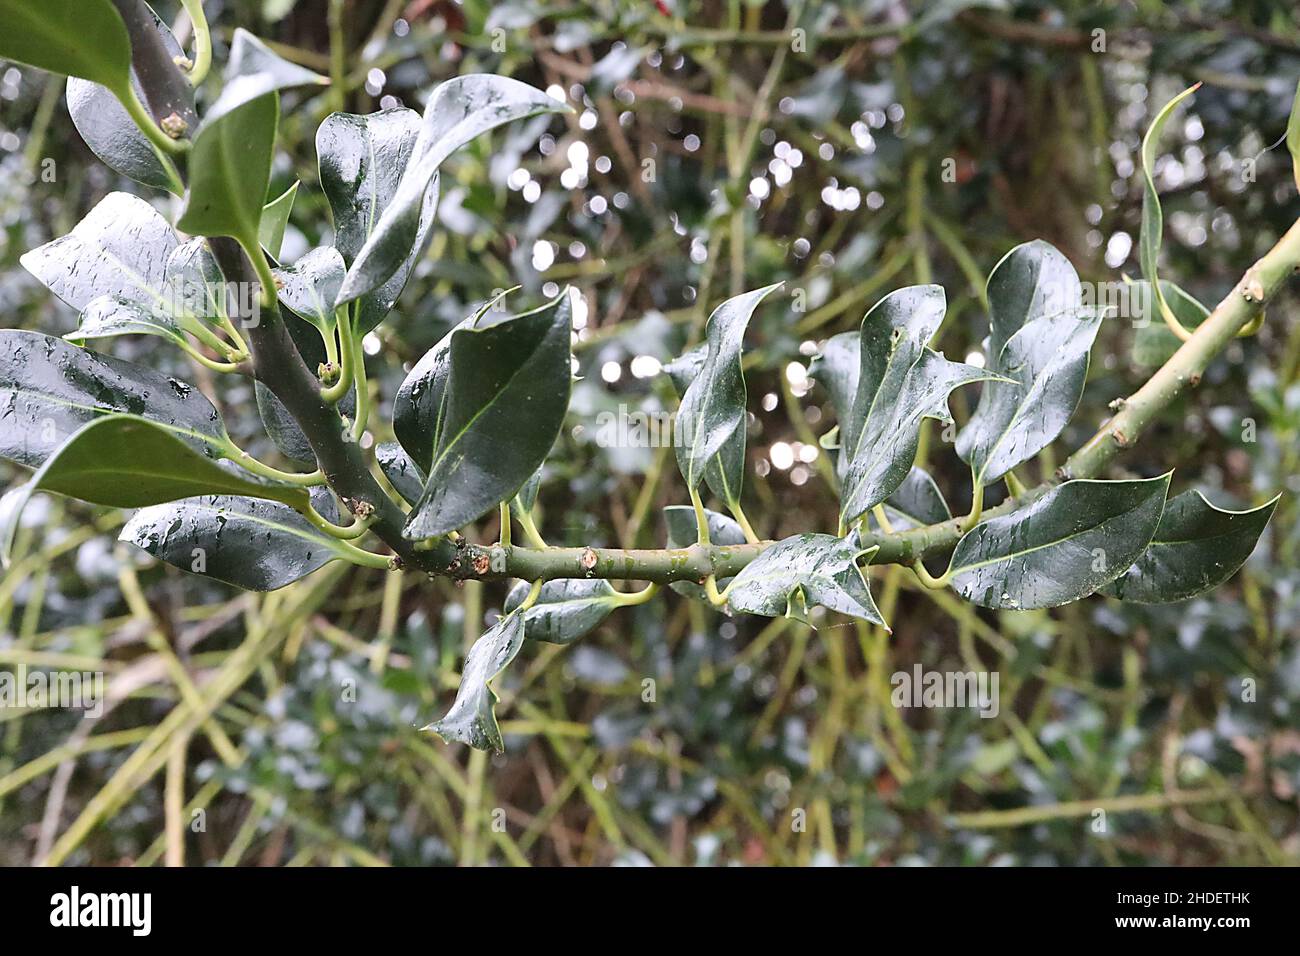 Ilex aquifolium «Latisfina» Holly Latisfina – foglie lucide di colore verde scuro con margini ritorti e gialli, gennaio, Inghilterra, Regno Unito Foto Stock